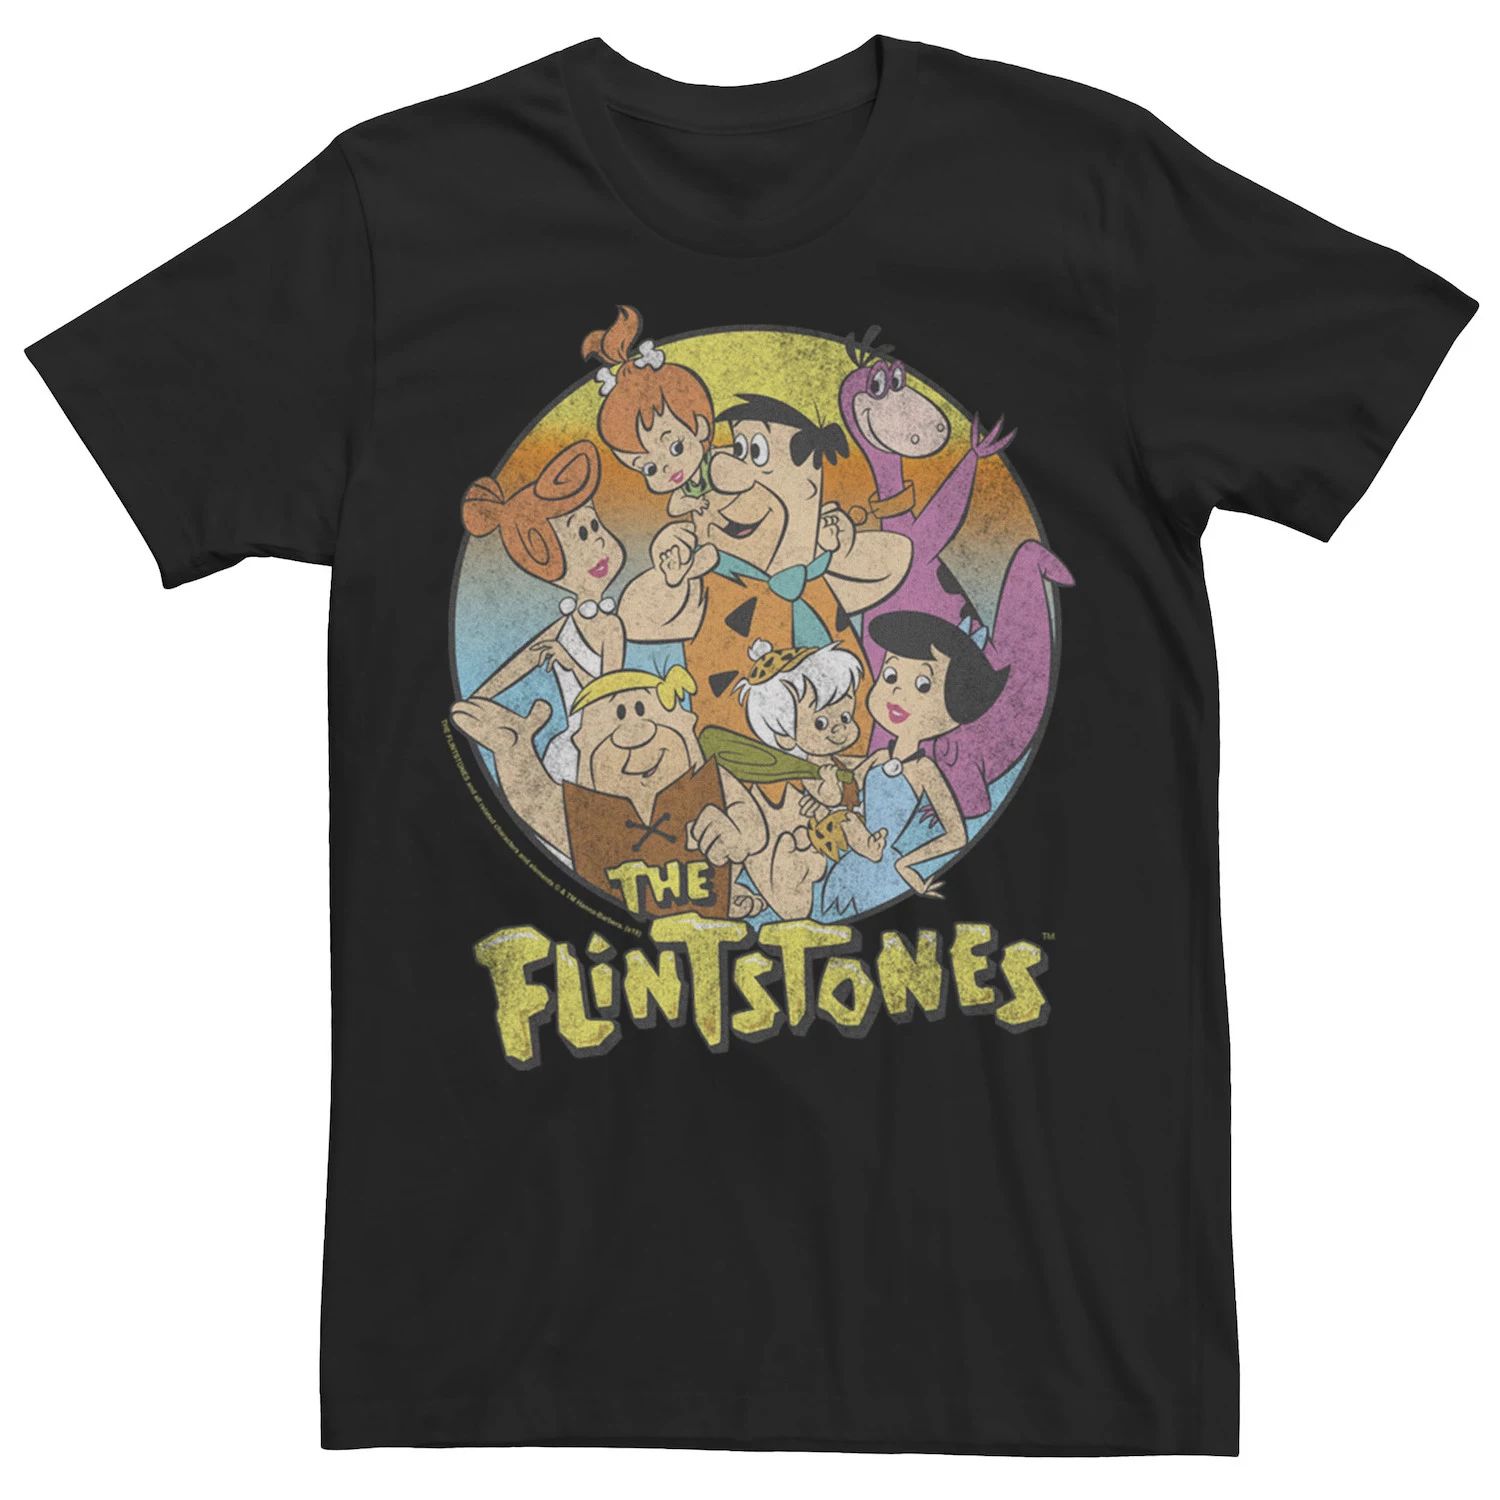 Мужская футболка с потертостями и групповым портретом The Flintstones Licensed Character фото